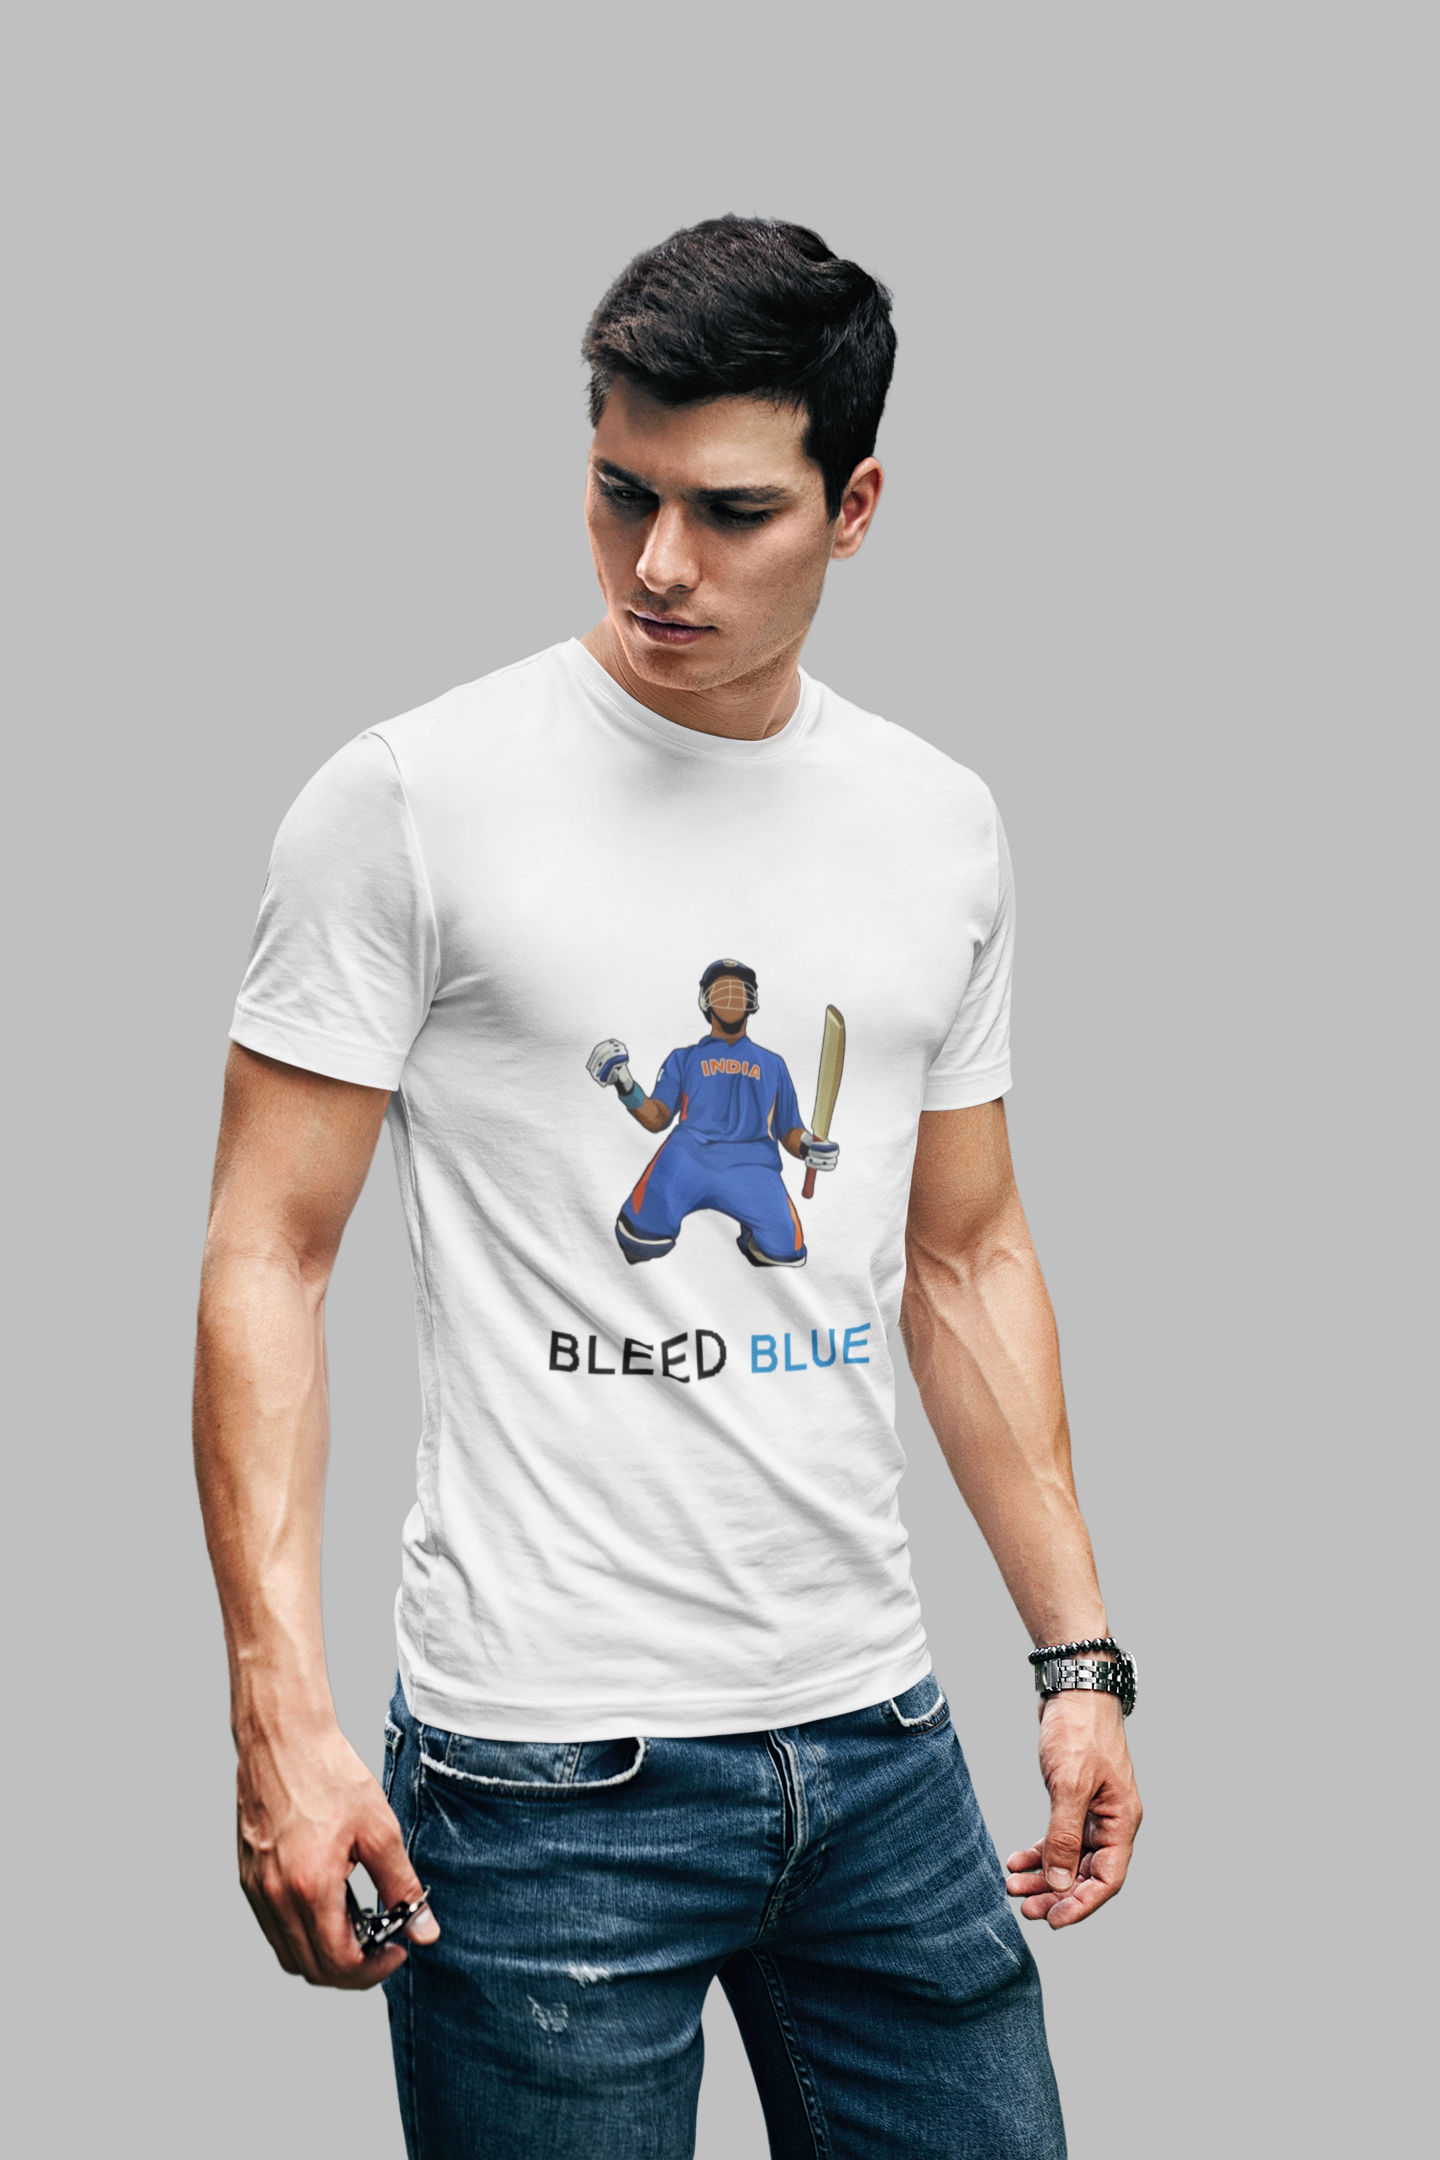 we all bleed blue' Men's T-Shirt